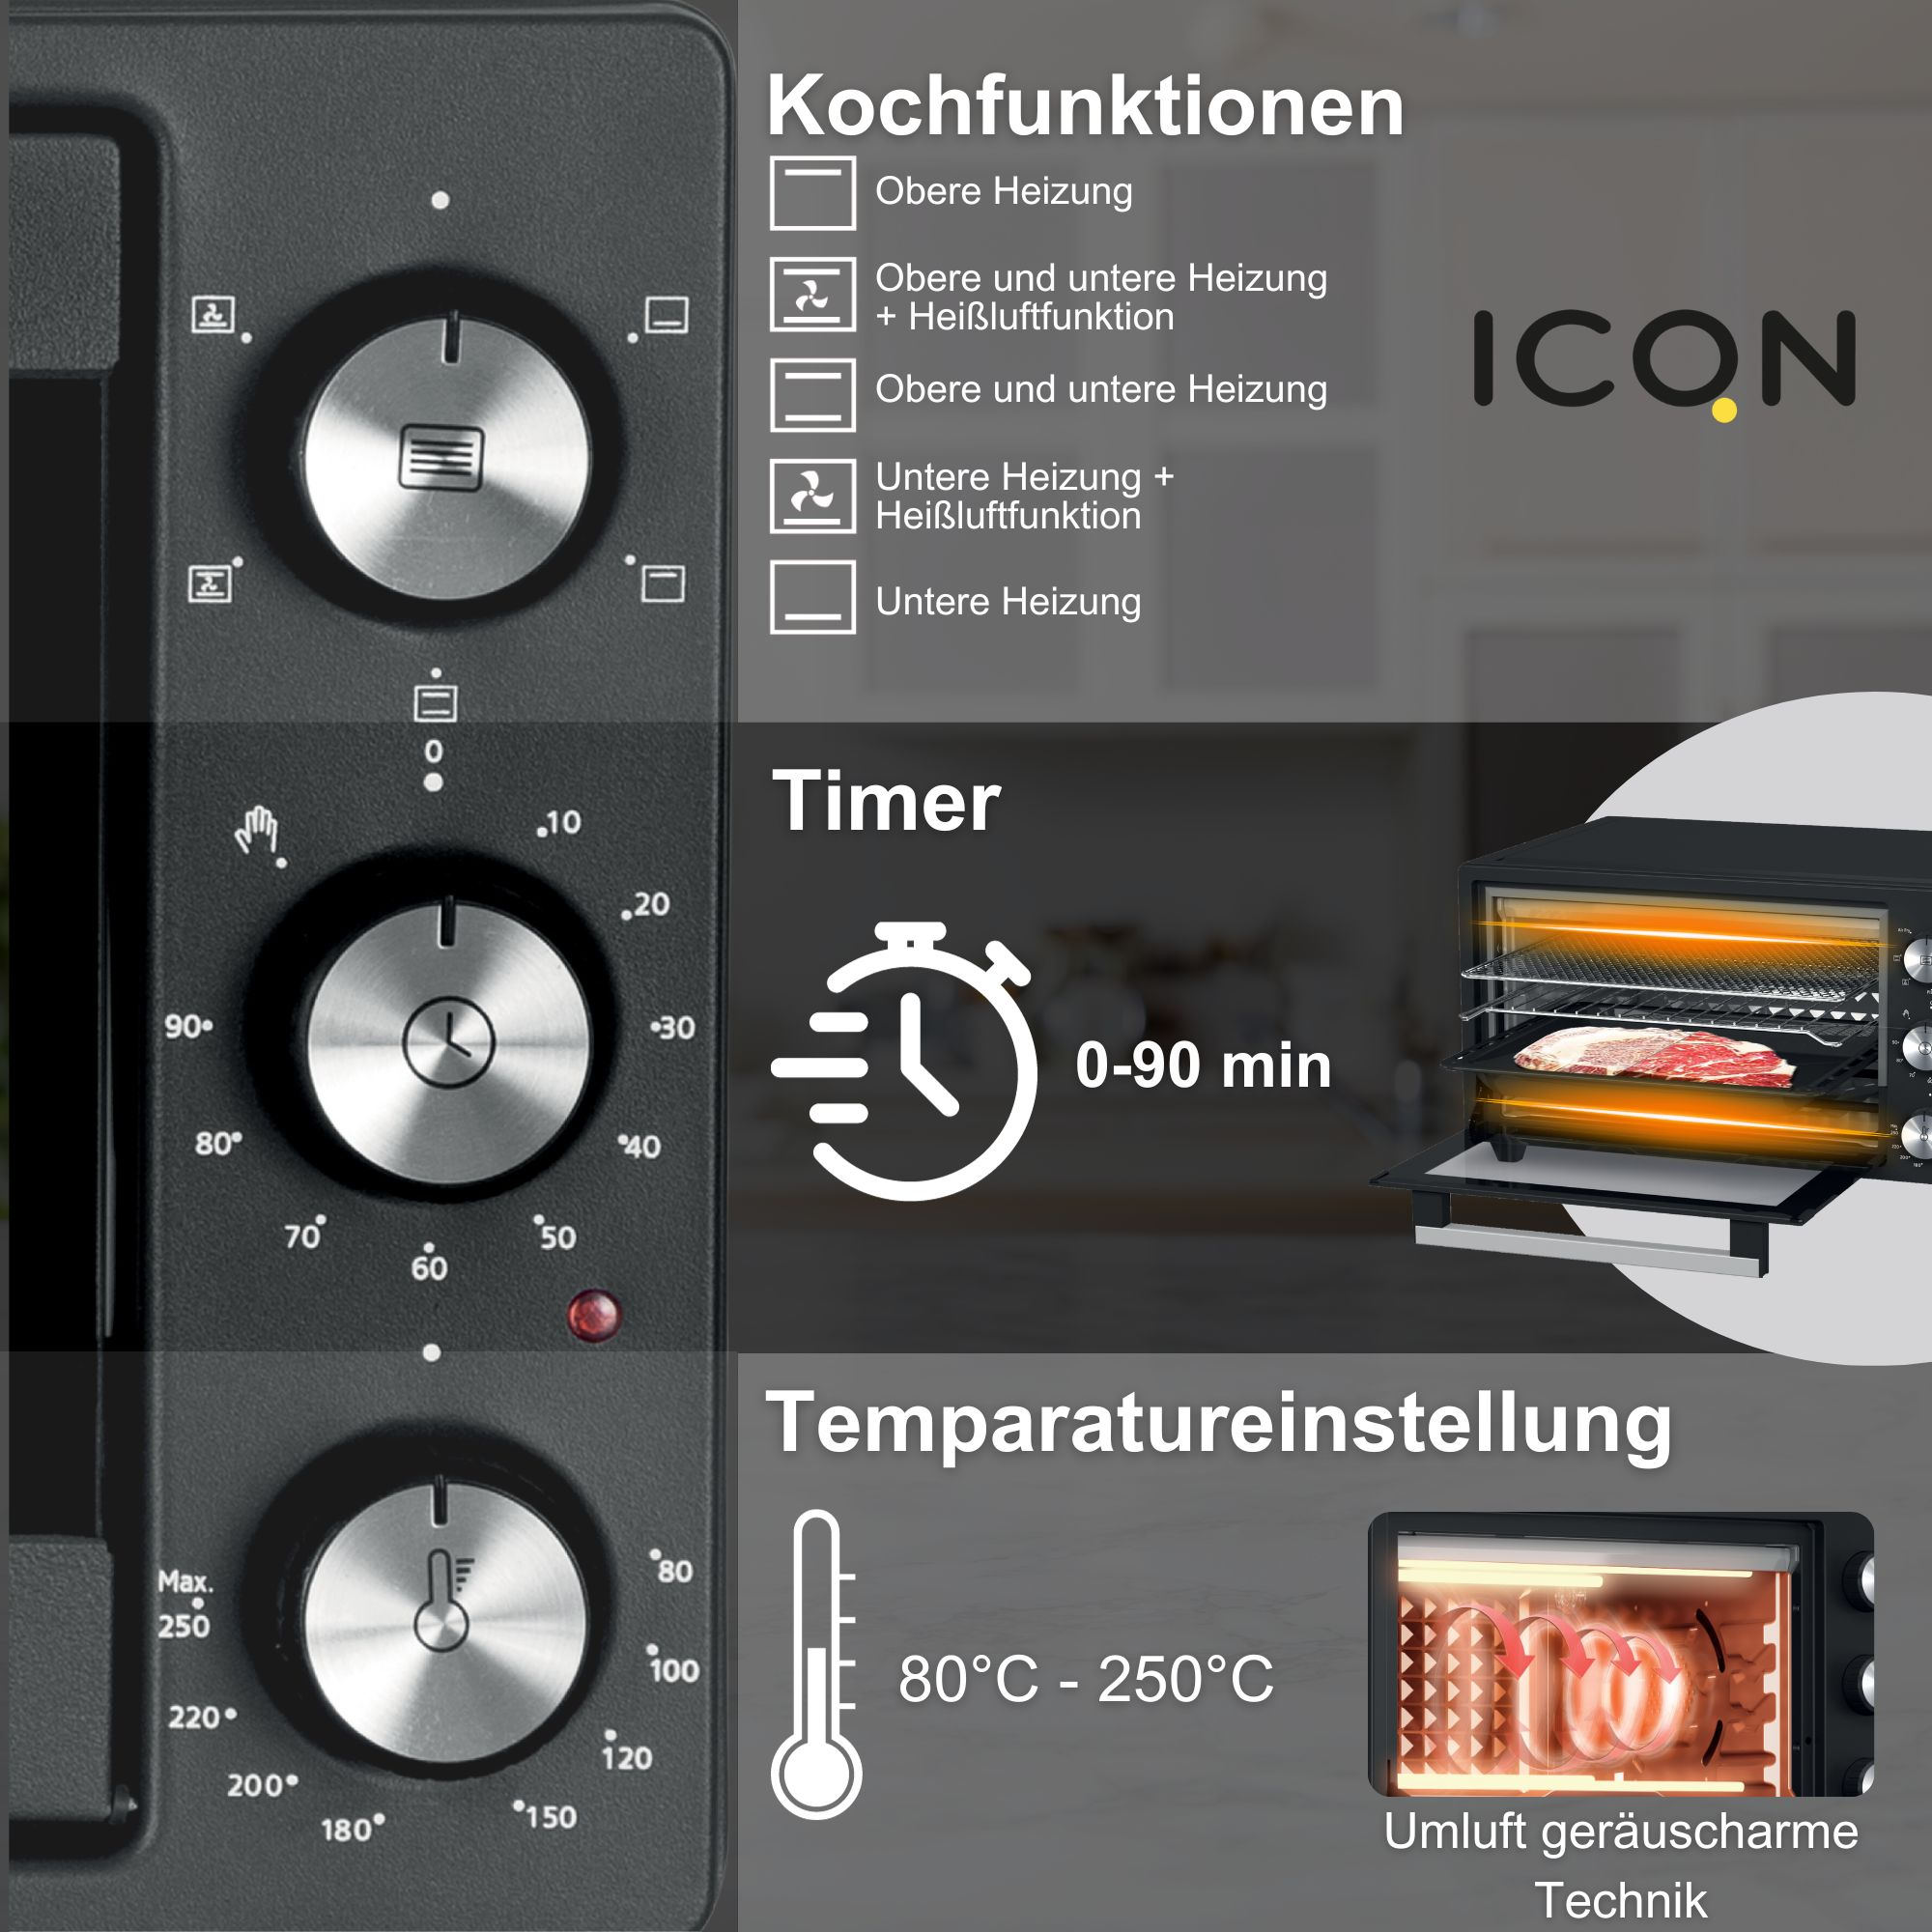 ICQN 20 Minibackofen Min. L, 5 1500 90 Timer W, 80°-250°C, Grill-Funktion